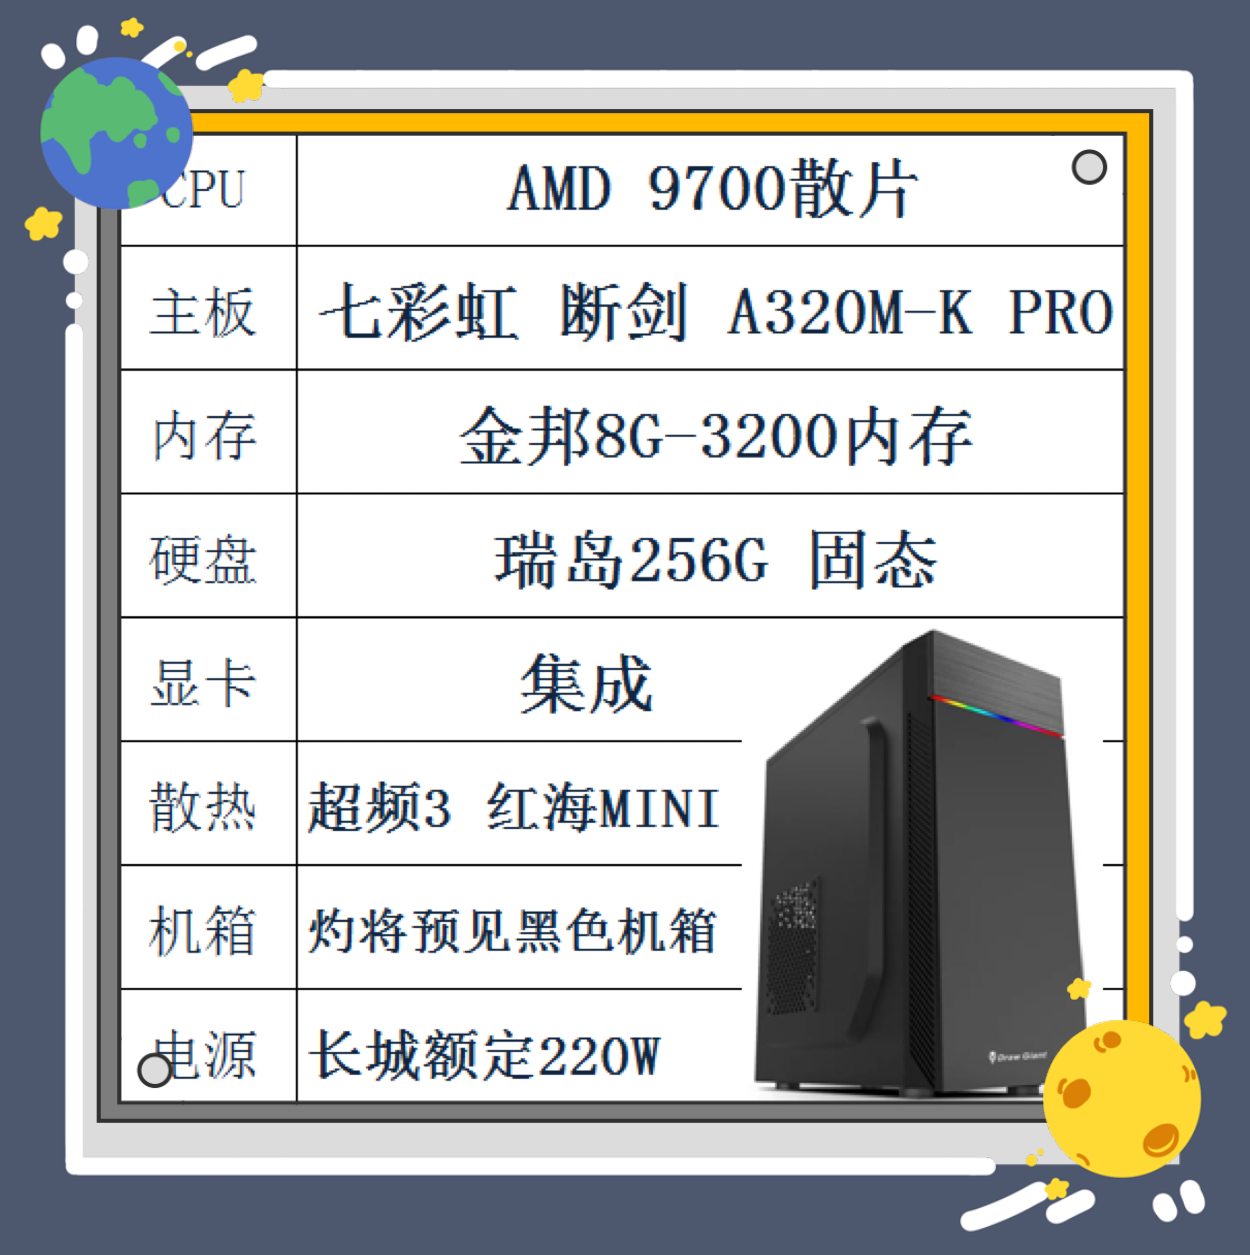 AMD9700散片 七彩虹A320M主板 256G固态 金邦8G 长城电源